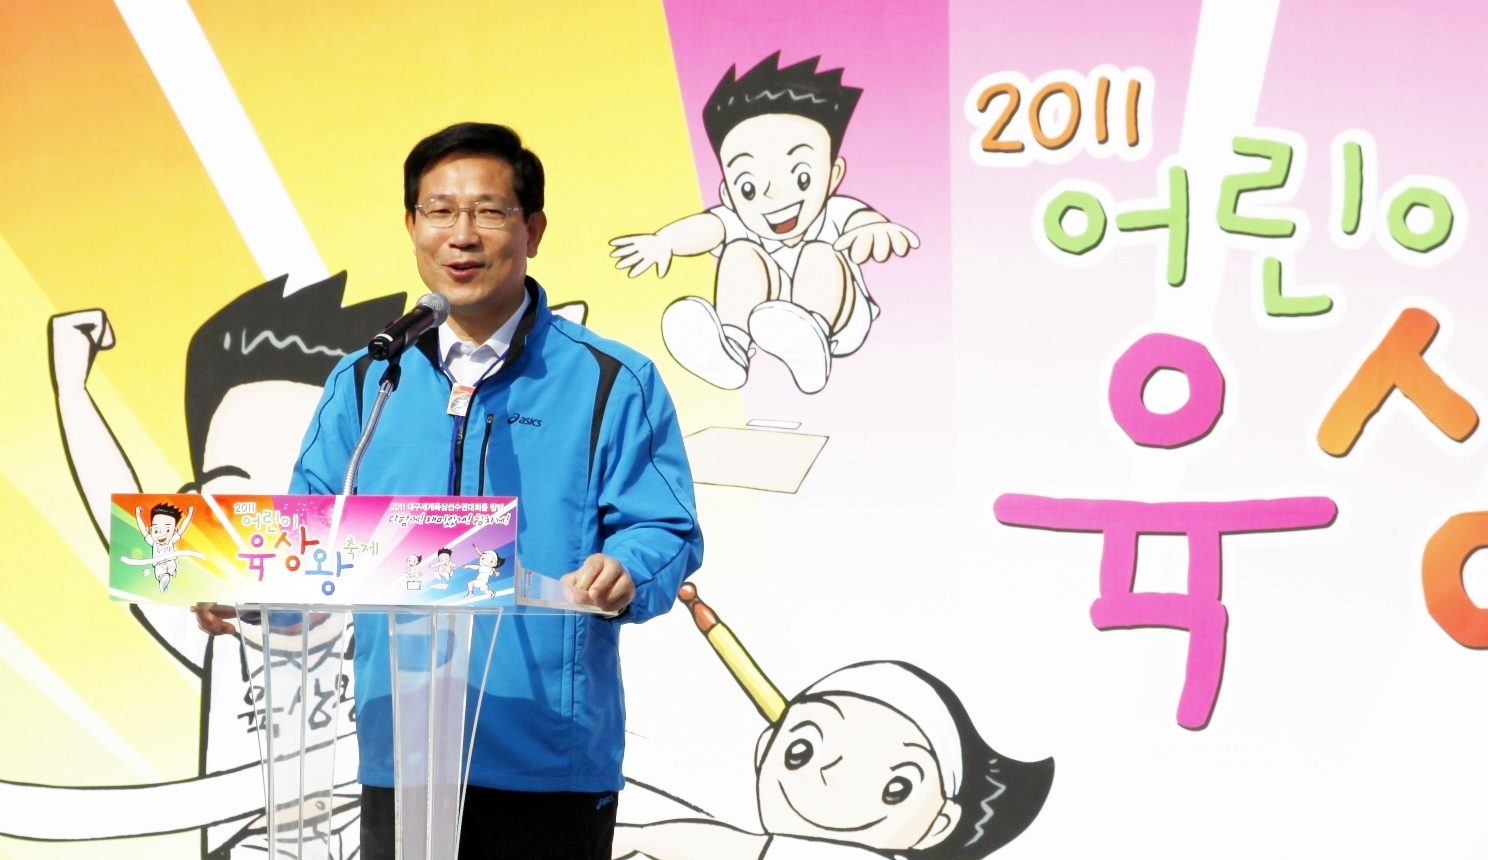 박선규 문화체육관광부 2차관이 내빈으로 참석해 축사하는 모습